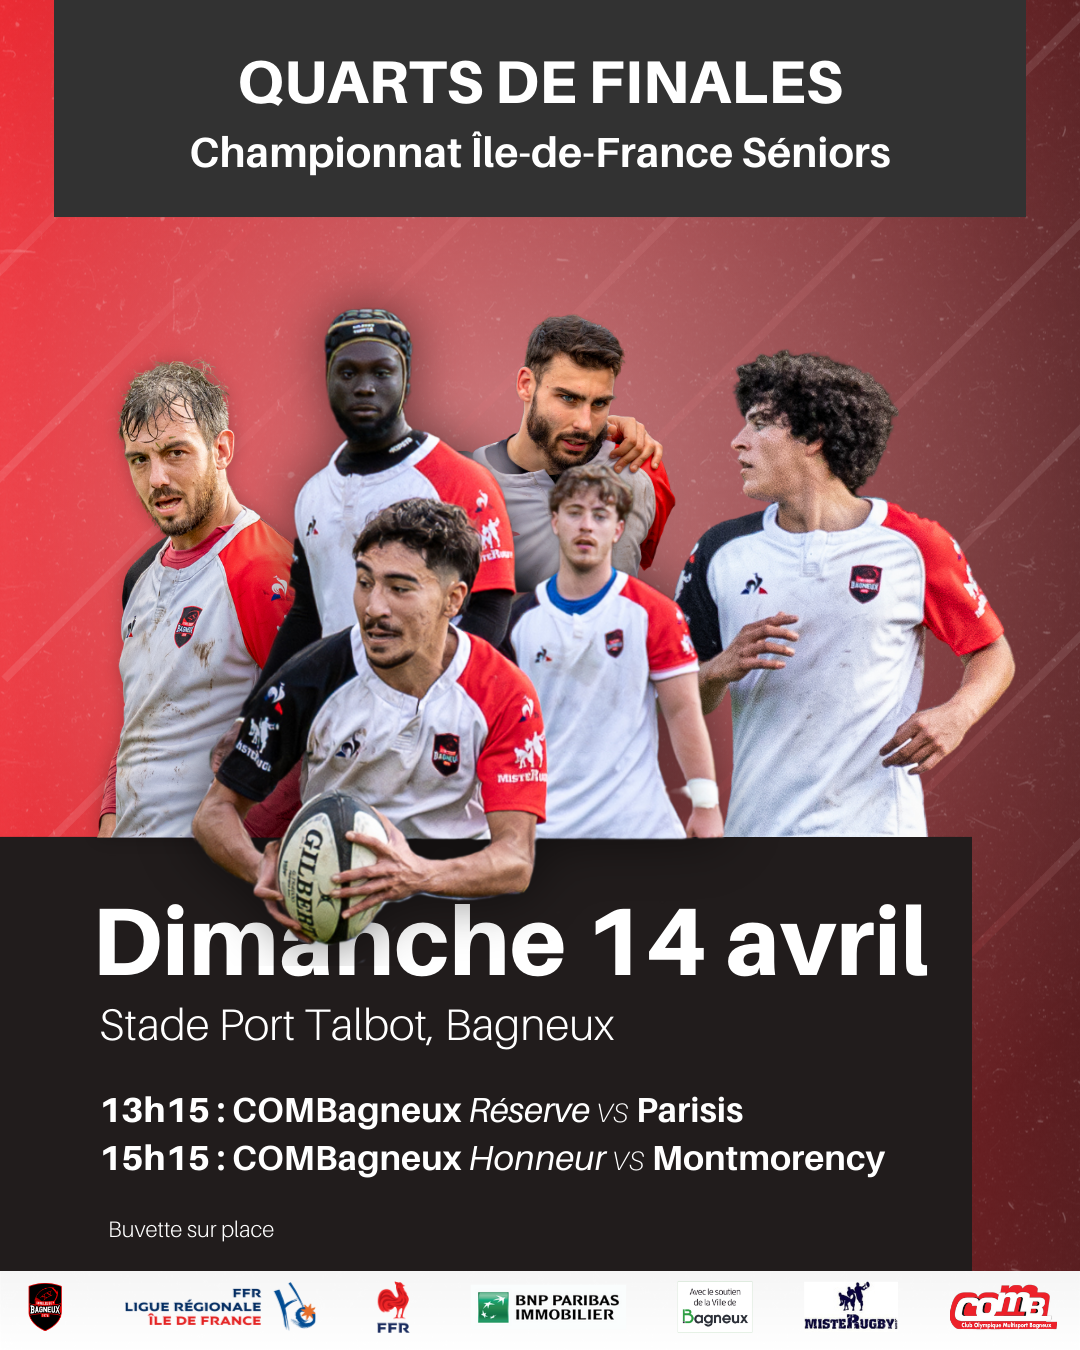 Affiche de Ce dimanche 14 avril, le stade Port Talbot accueillera les quarts de finales régionales à partir de 13h. Le COMBagneux affrontera l'équipe réserve de Parisis et l'équipe A rencontrera Montmorency à 15h15 !